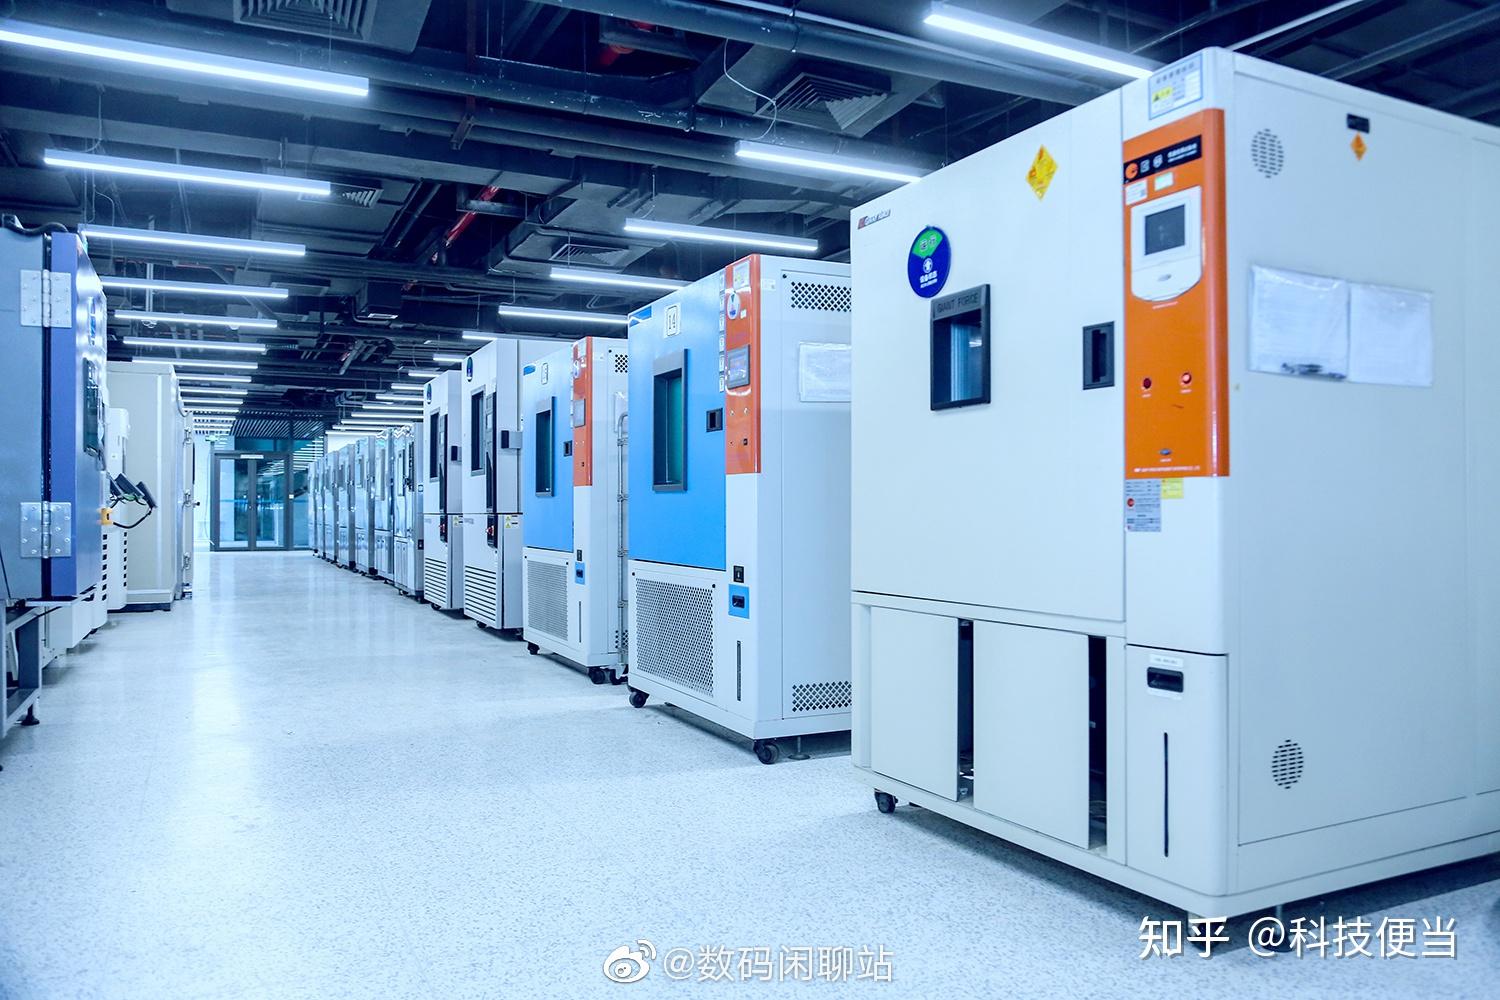 爆料,来自vivo的"上海研发中心的芯片研发部门"首次在网络上进行曝光